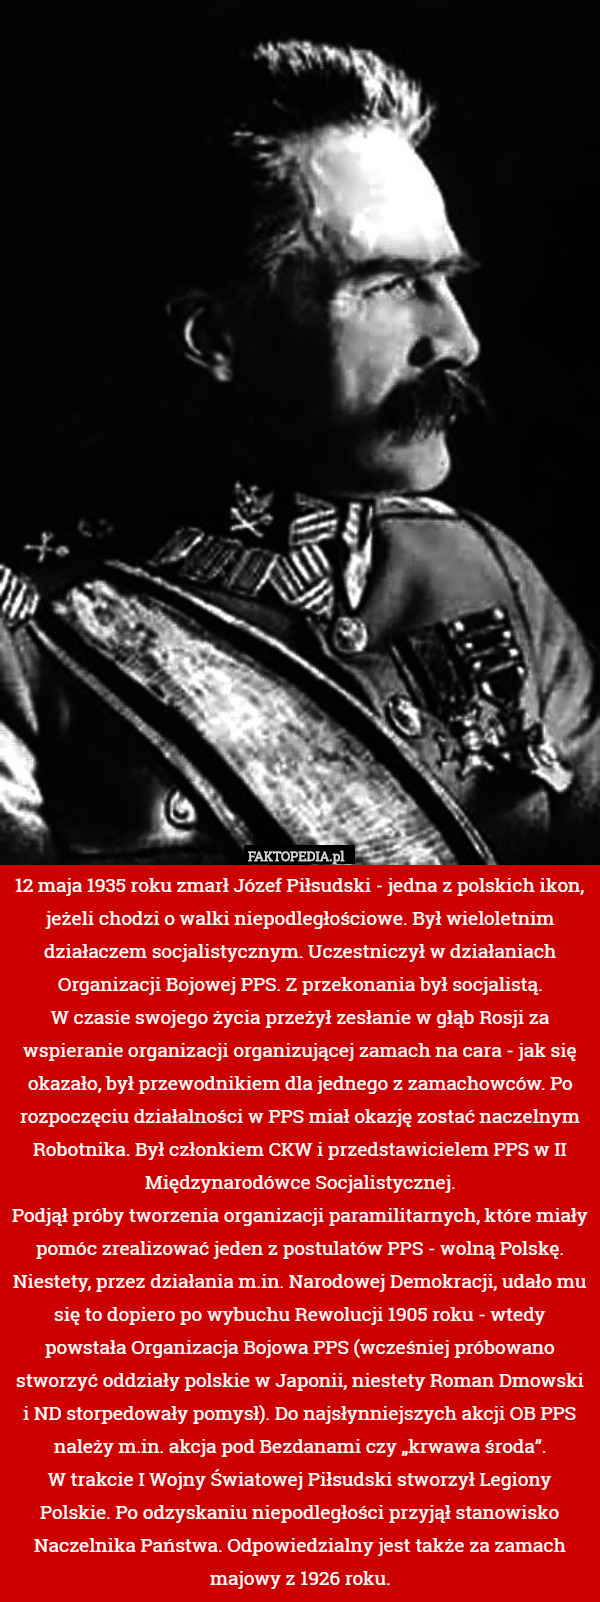 12 maja 1935 roku zmarł Józef Piłsudski - jedna z polskich ikon, jeżeli chodzi o walki niepodległościowe. Był wieloletnim działaczem socjalistycznym. Uczestniczył w działaniach Organizacji Bojowej PPS. Z przekonania był socjalistą.
W czasie swojego życia przeżył zesłanie w głąb Rosji za wspieranie organizacji organizującej zamach na cara - jak się okazało, był przewodnikiem dla jednego z zamachowców. Po rozpoczęciu działalności w PPS miał okazję zostać naczelnym Robotnika. Był członkiem CKW i przedstawicielem PPS w II Międzynarodówce Socjalistycznej.
Podjął próby tworzenia organizacji paramilitarnych, które miały pomóc zrealizować jeden z postulatów PPS - wolną Polskę. Niestety, przez działania m.in. Narodowej Demokracji, udało mu się to dopiero po wybuchu Rewolucji 1905 roku - wtedy powstała Organizacja Bojowa PPS (wcześniej próbowano stworzyć oddziały polskie w Japonii, niestety Roman Dmowski i ND storpedowały pomysł). Do najsłynniejszych akcji OB PPS należy m.in. akcja pod Bezdanami czy „krwawa środa”.
W trakcie I Wojny Światowej Piłsudski stworzył Legiony Polskie. Po odzyskaniu niepodległości przyjął stanowisko Naczelnika Państwa. Odpowiedzialny jest także za zamach majowy z 1926 roku. 